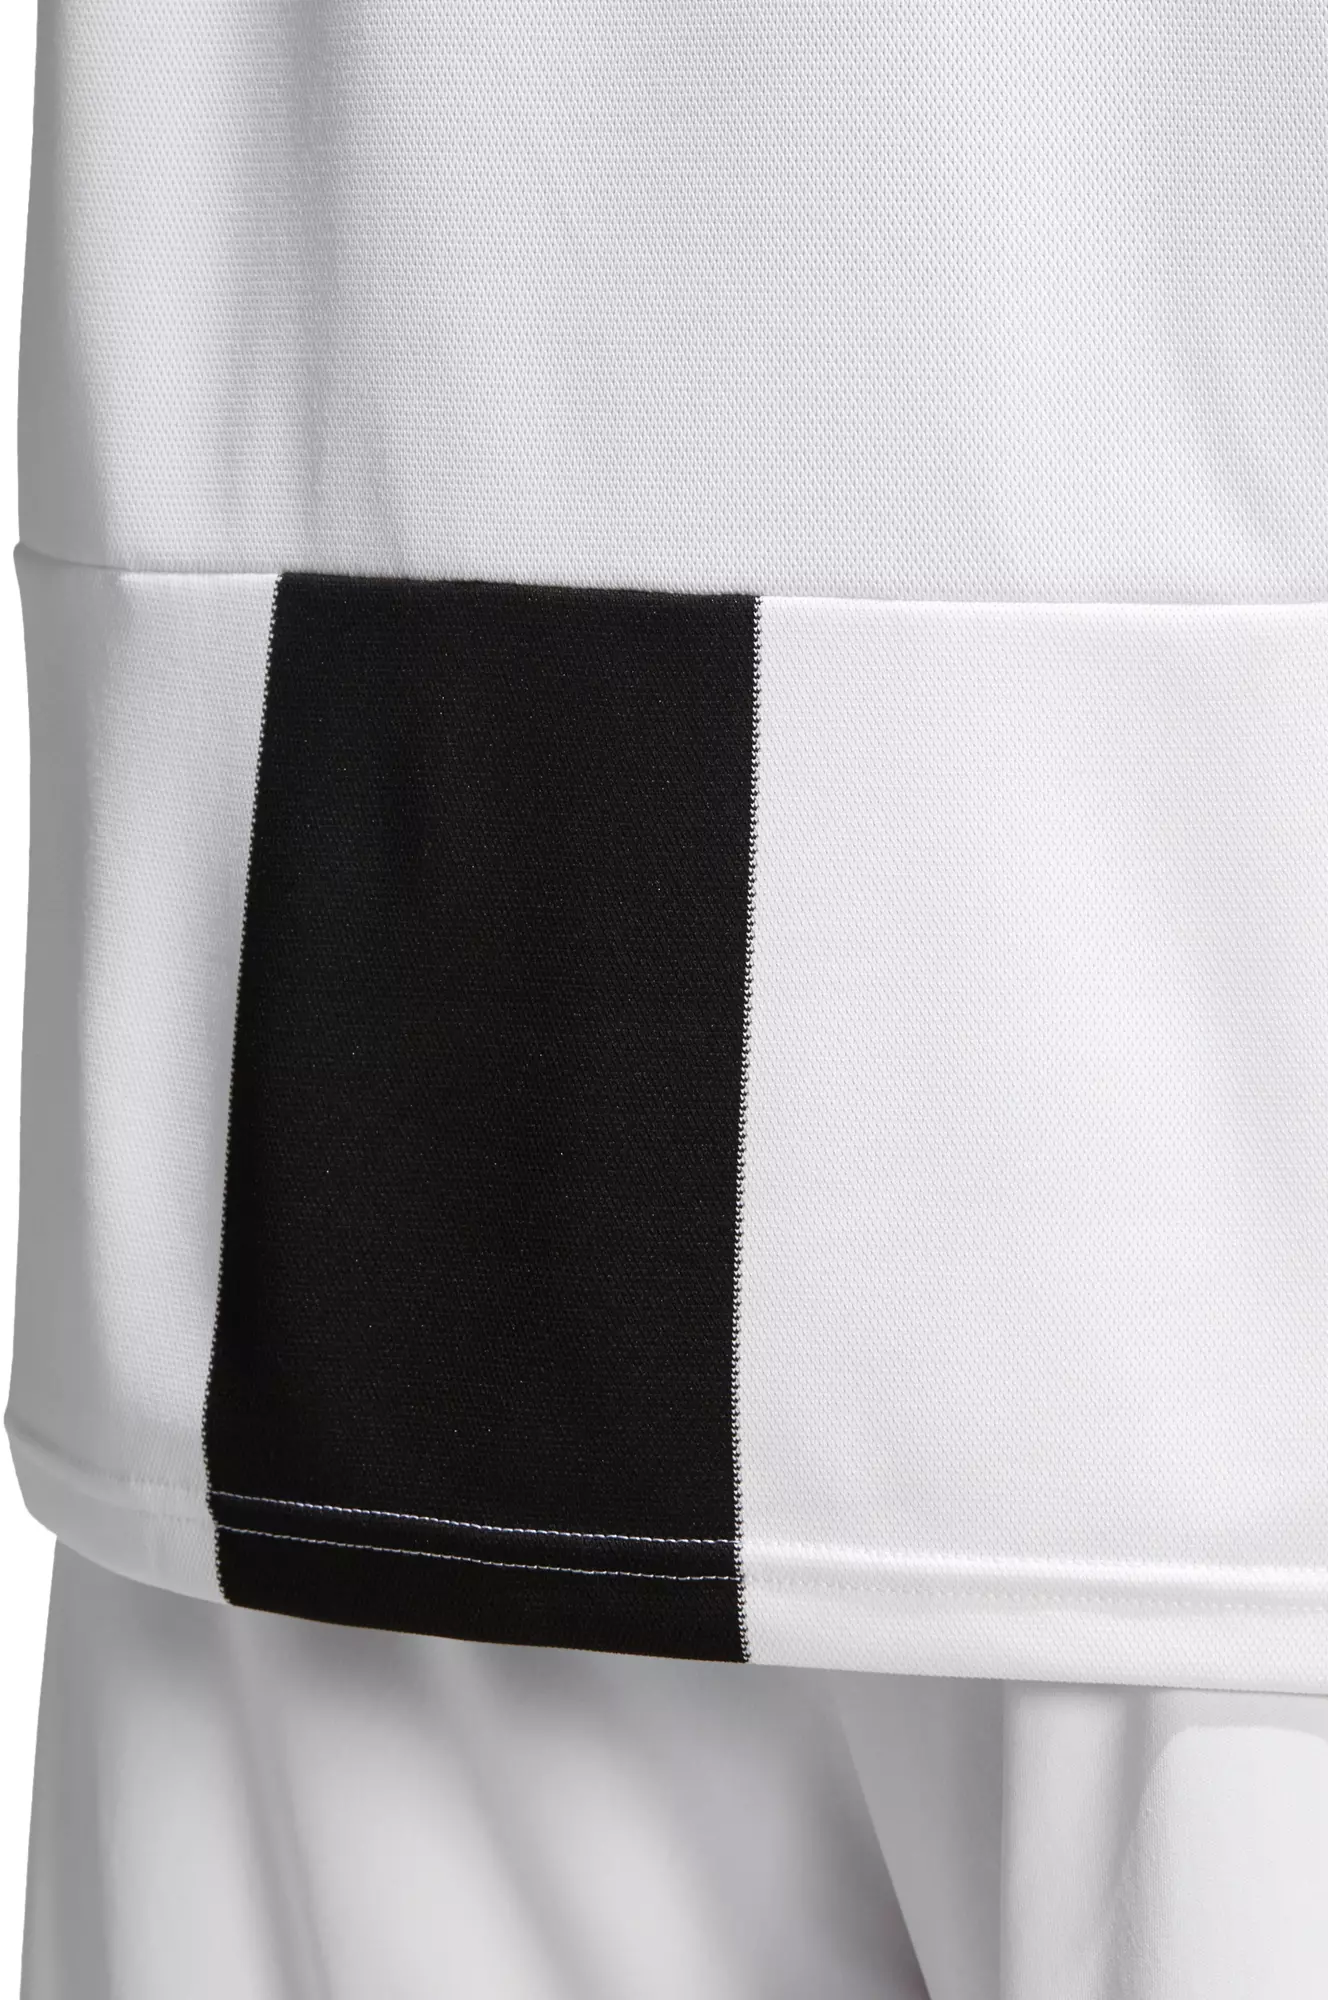 Adidas Juventus Turin 18 19 Heim Trikot Herren Black Im Online Shop Von Sportscheck Kaufen